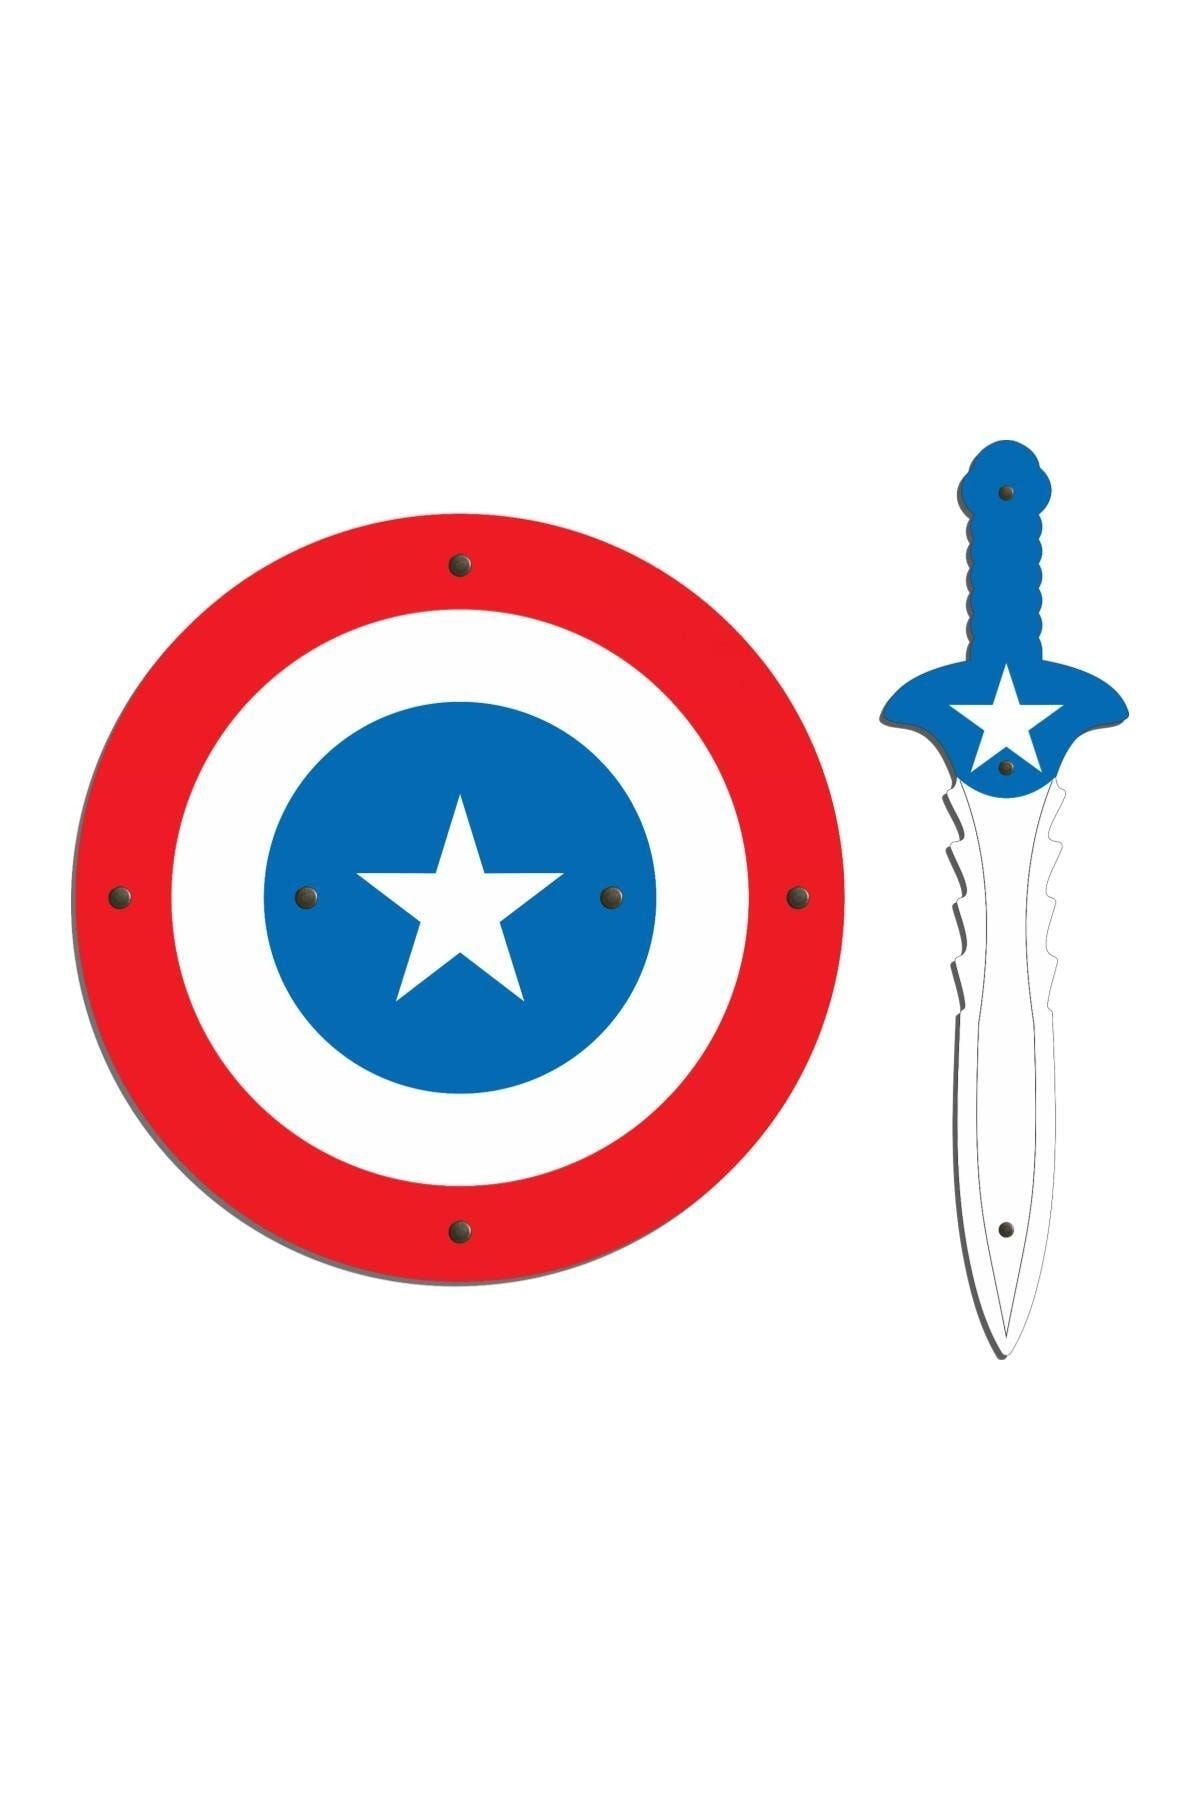 Ahtek Ahşap Oyuncak Seti 2'li, Kaptan Amerika Kalkanı Ve Kılıcı Mavi